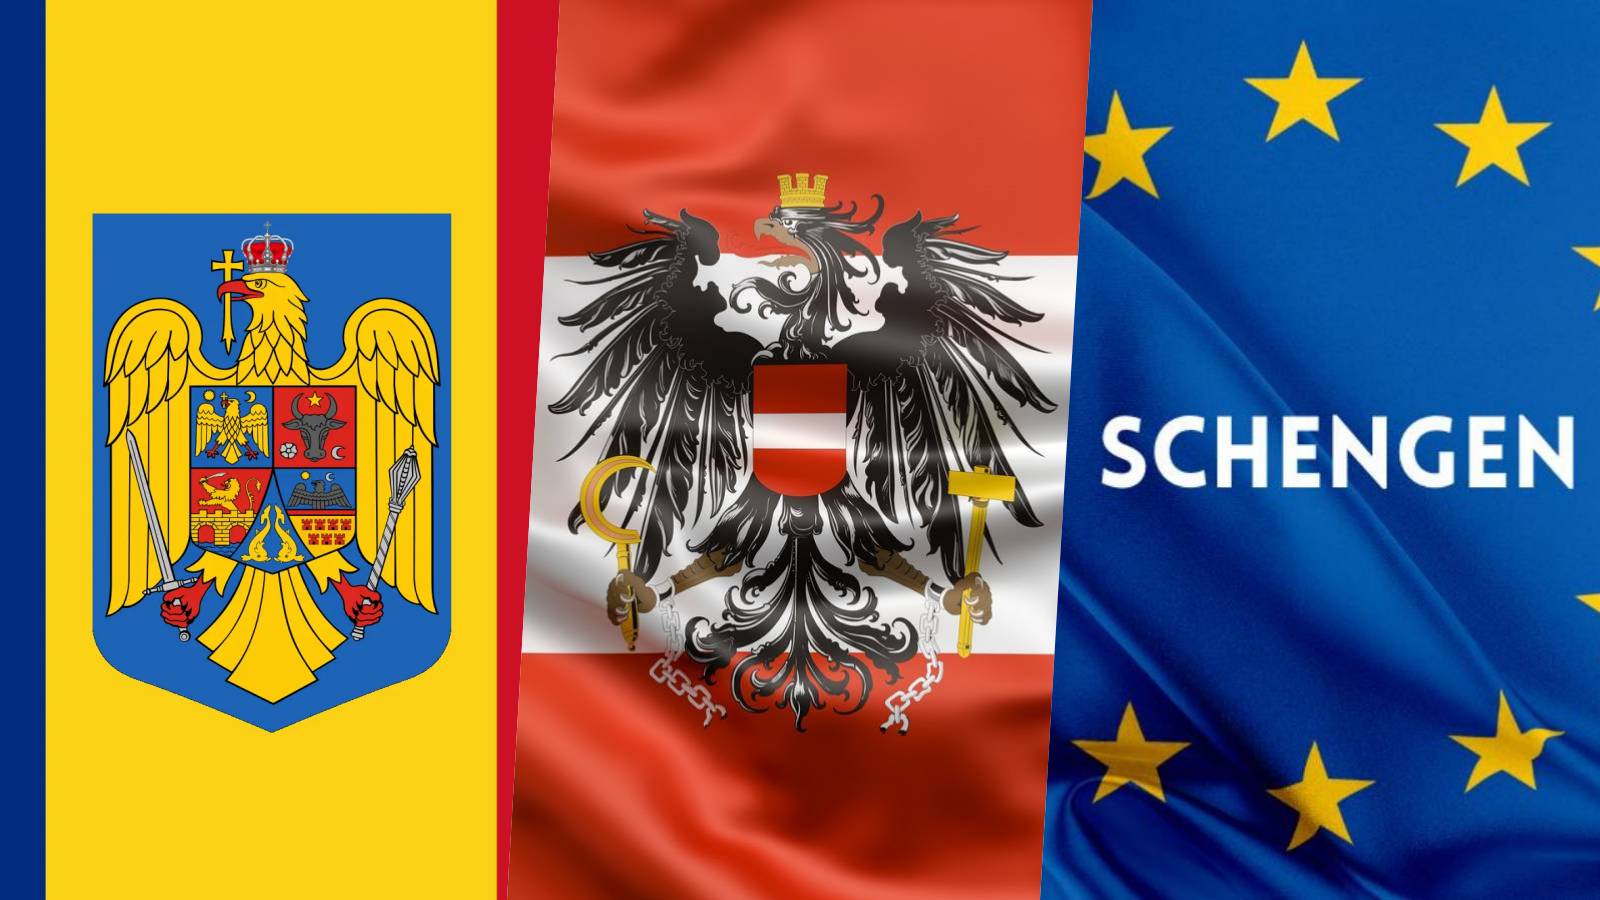 Importante anuncio oficial de Schengen ÚLTIMO MINUTO MAYO Cuando Rumania se une